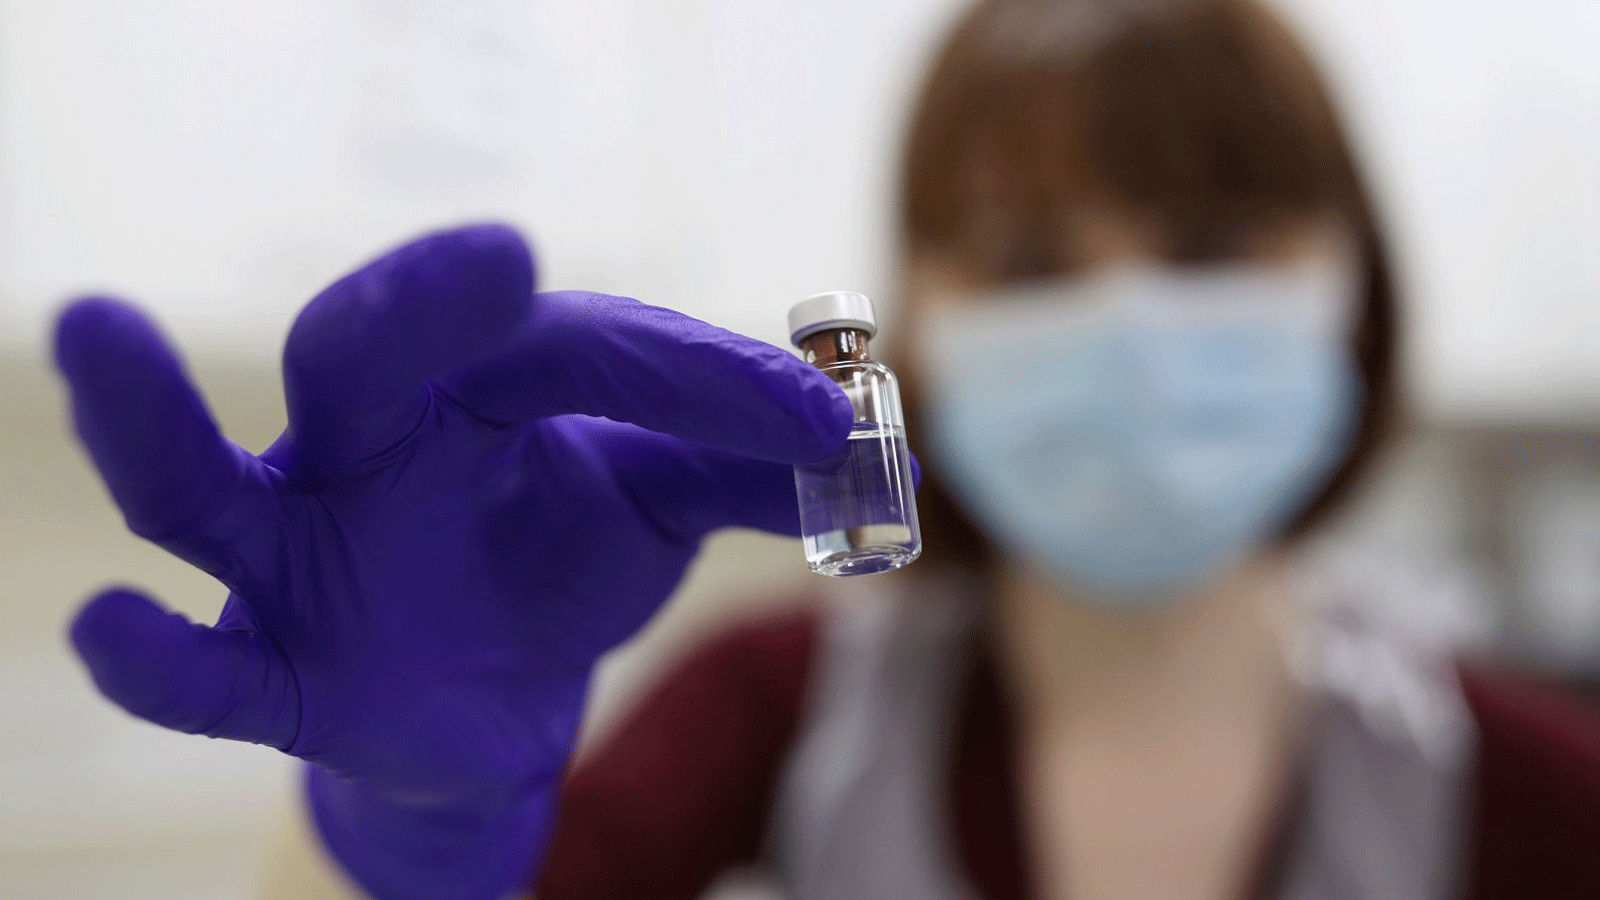 أخصائية صيدلية تابعة لهيئة الخدمات الصحية الوطنية تحمل قارورة لقاح فيروس كورونا في مستشفى رويال فري بلندن، 4 كانون الأول/ديسمبر 2020